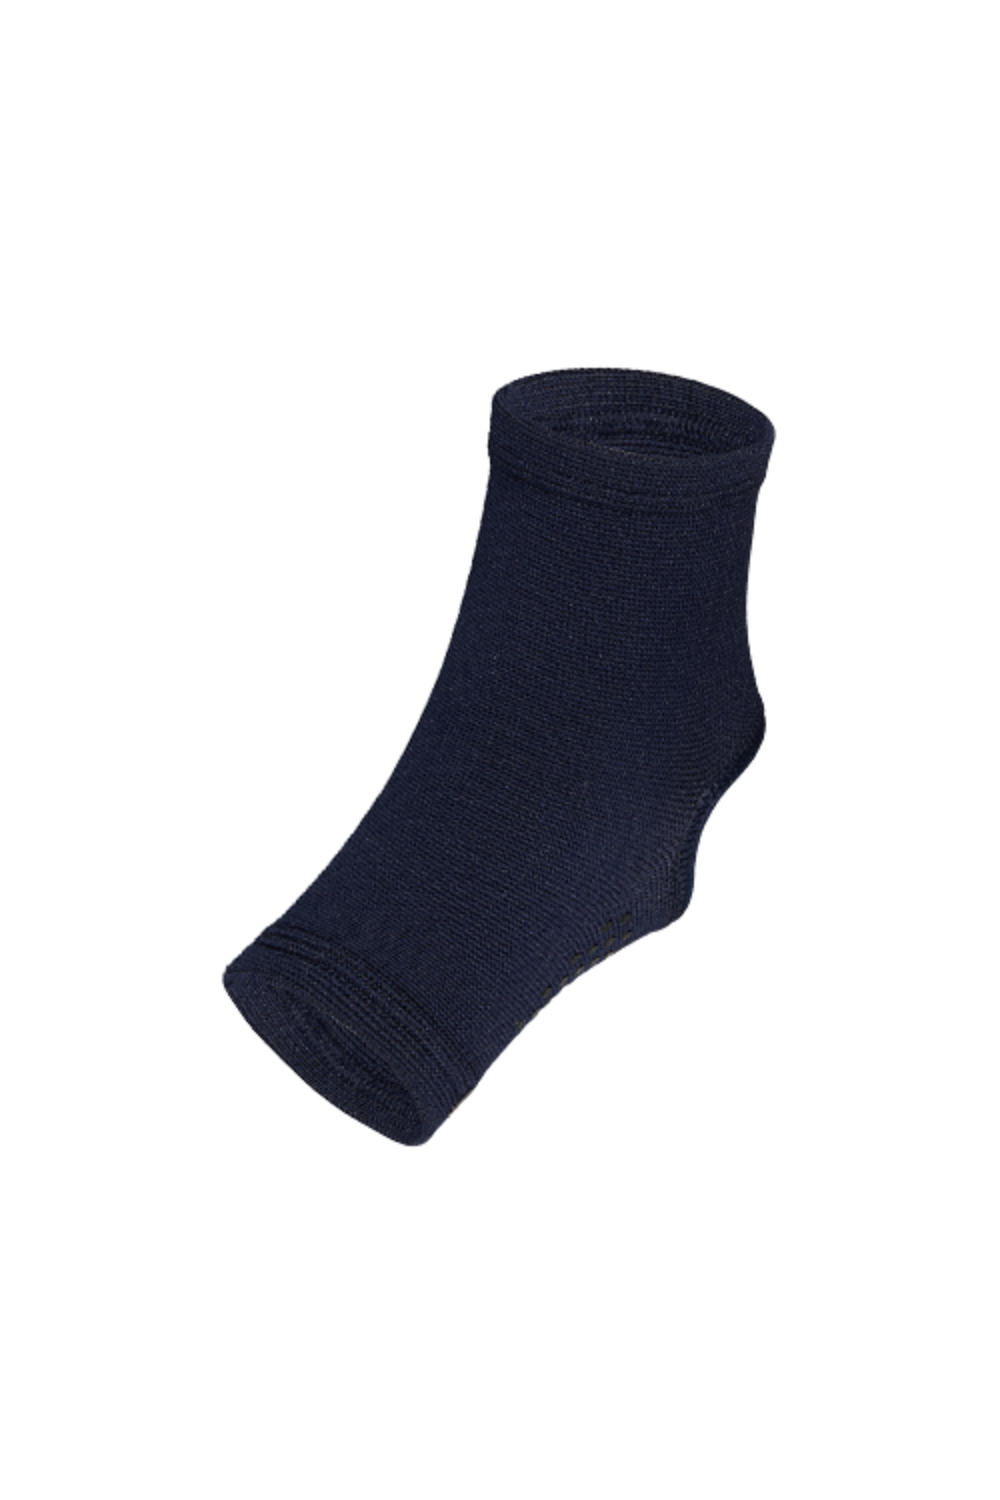 Non Slip Support Socks